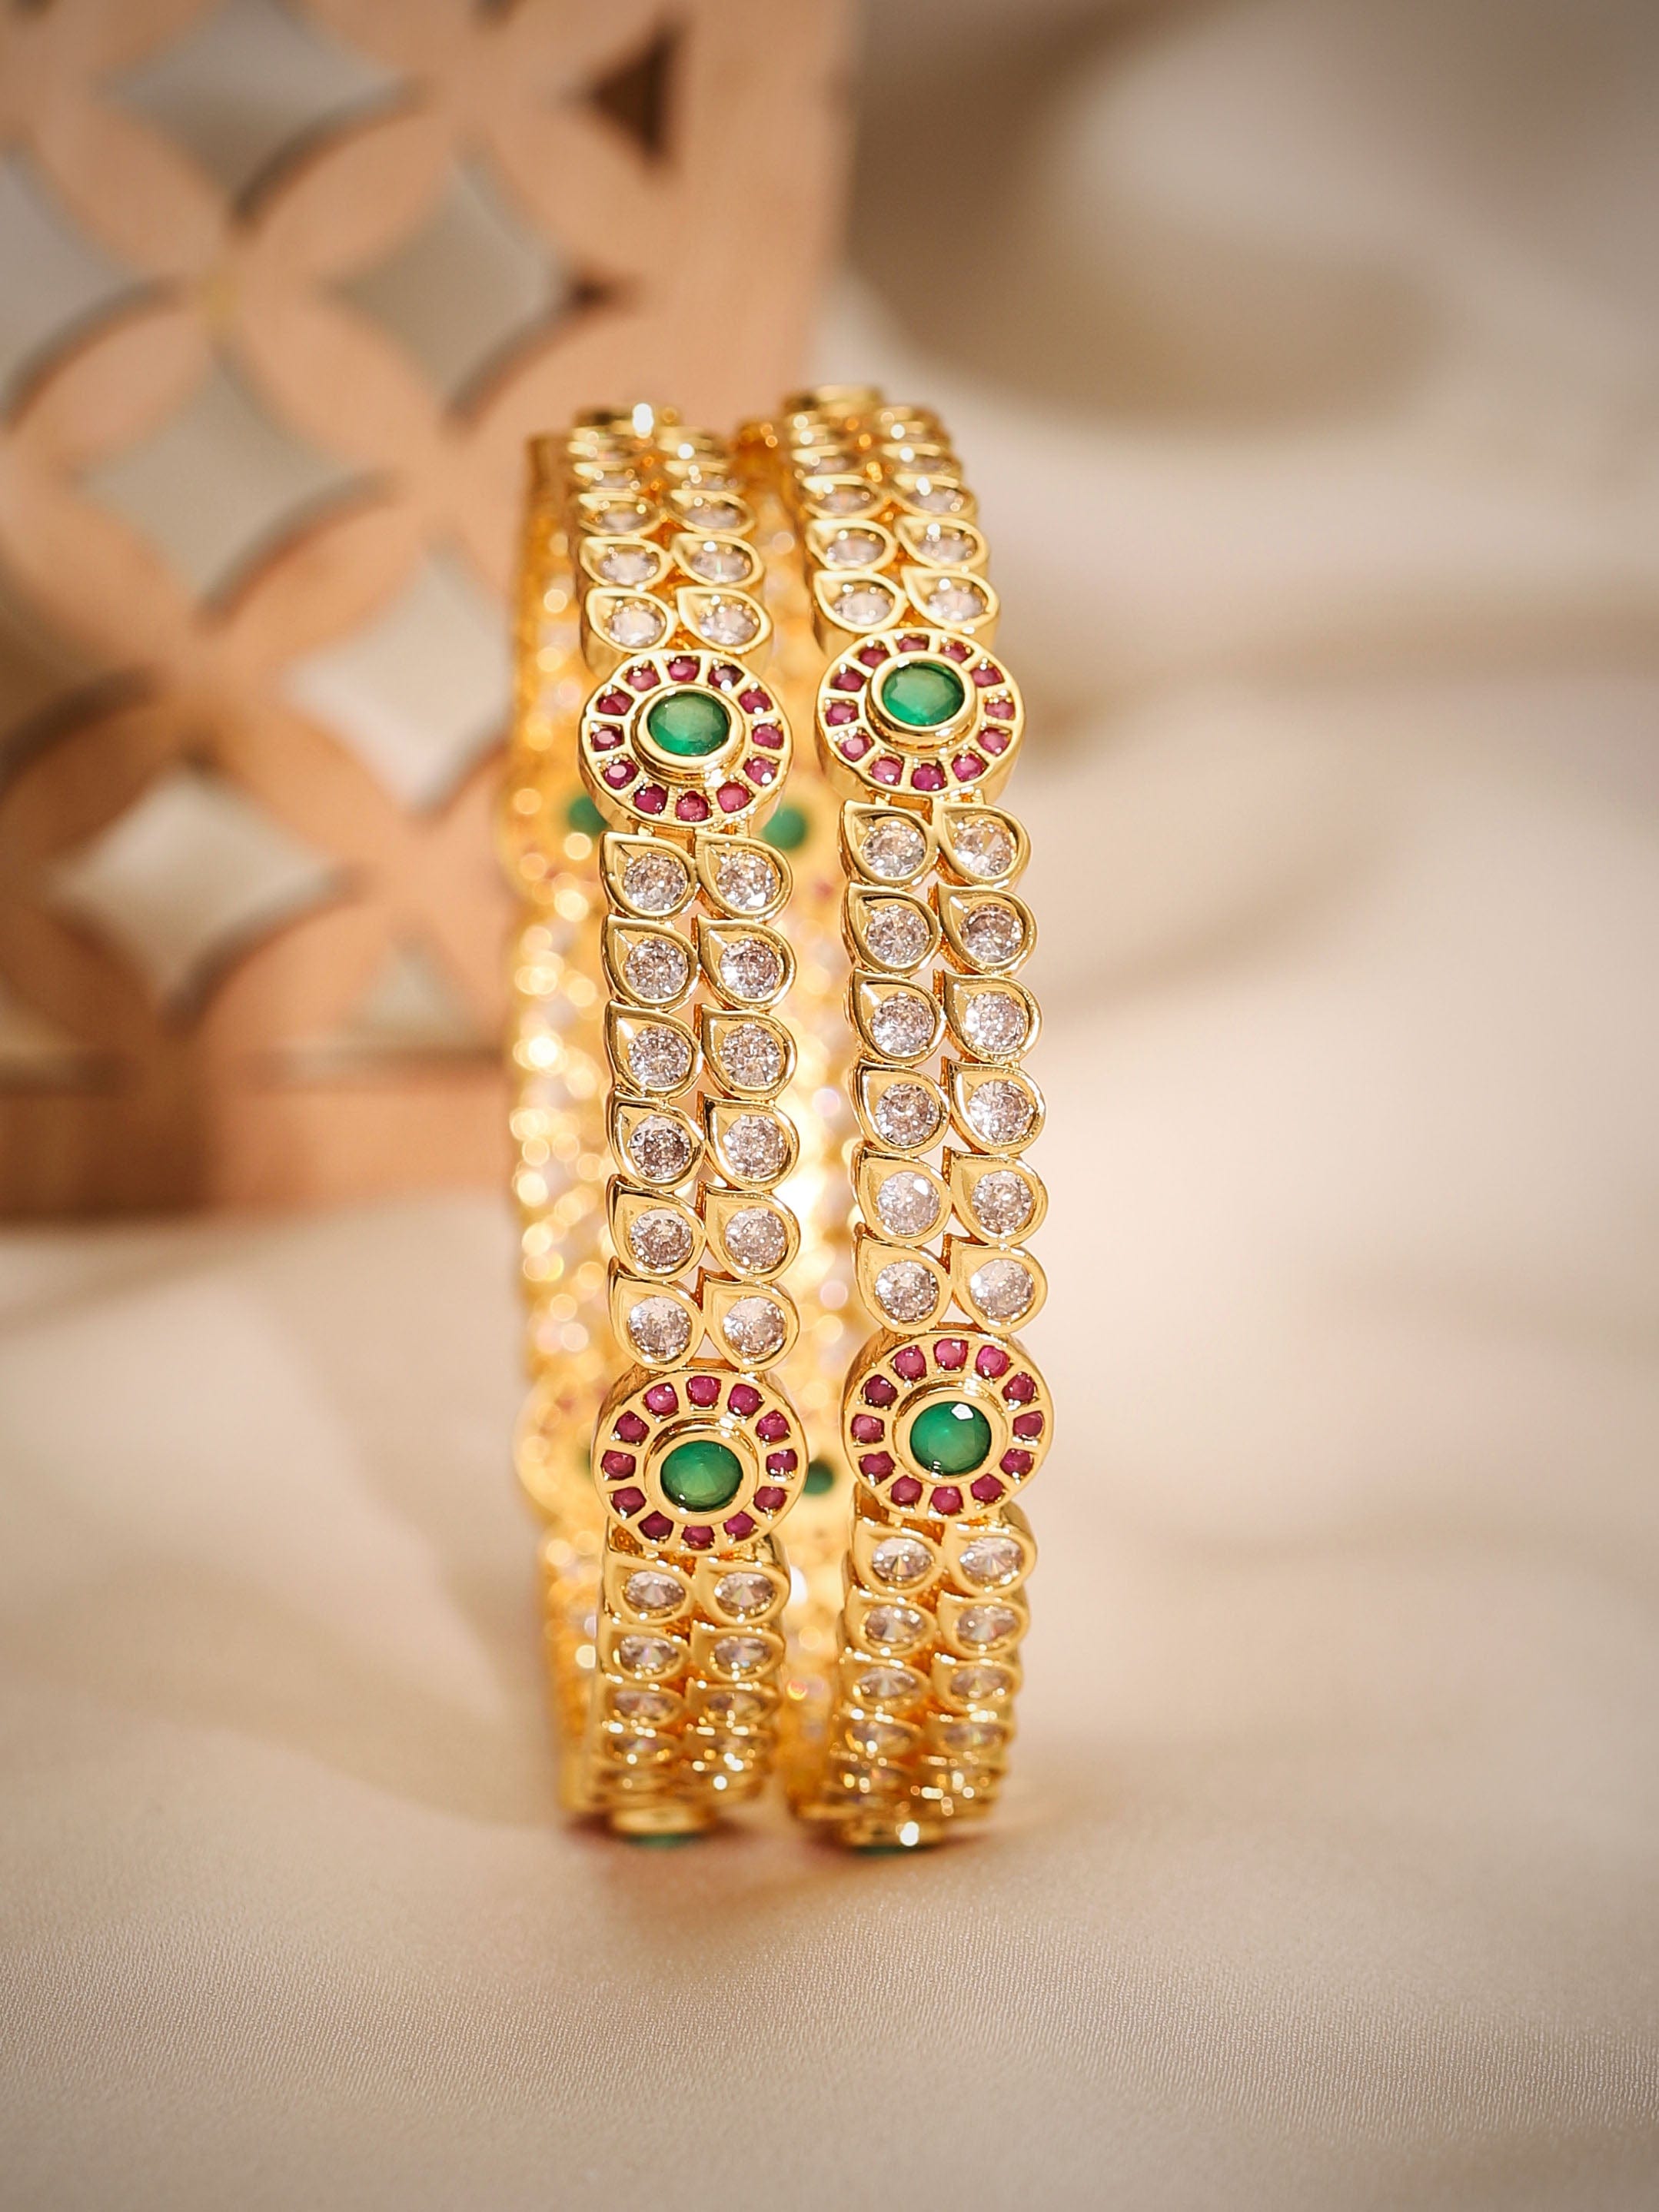 Buy Solid 24k Gold Bracelet//sizable 24k Gold Bracelet//24k Gold Ancient  Rome Bracelet//solid Gold Hammered Women Men Bracelet//artisan Bracelet  Online in India - Etsy